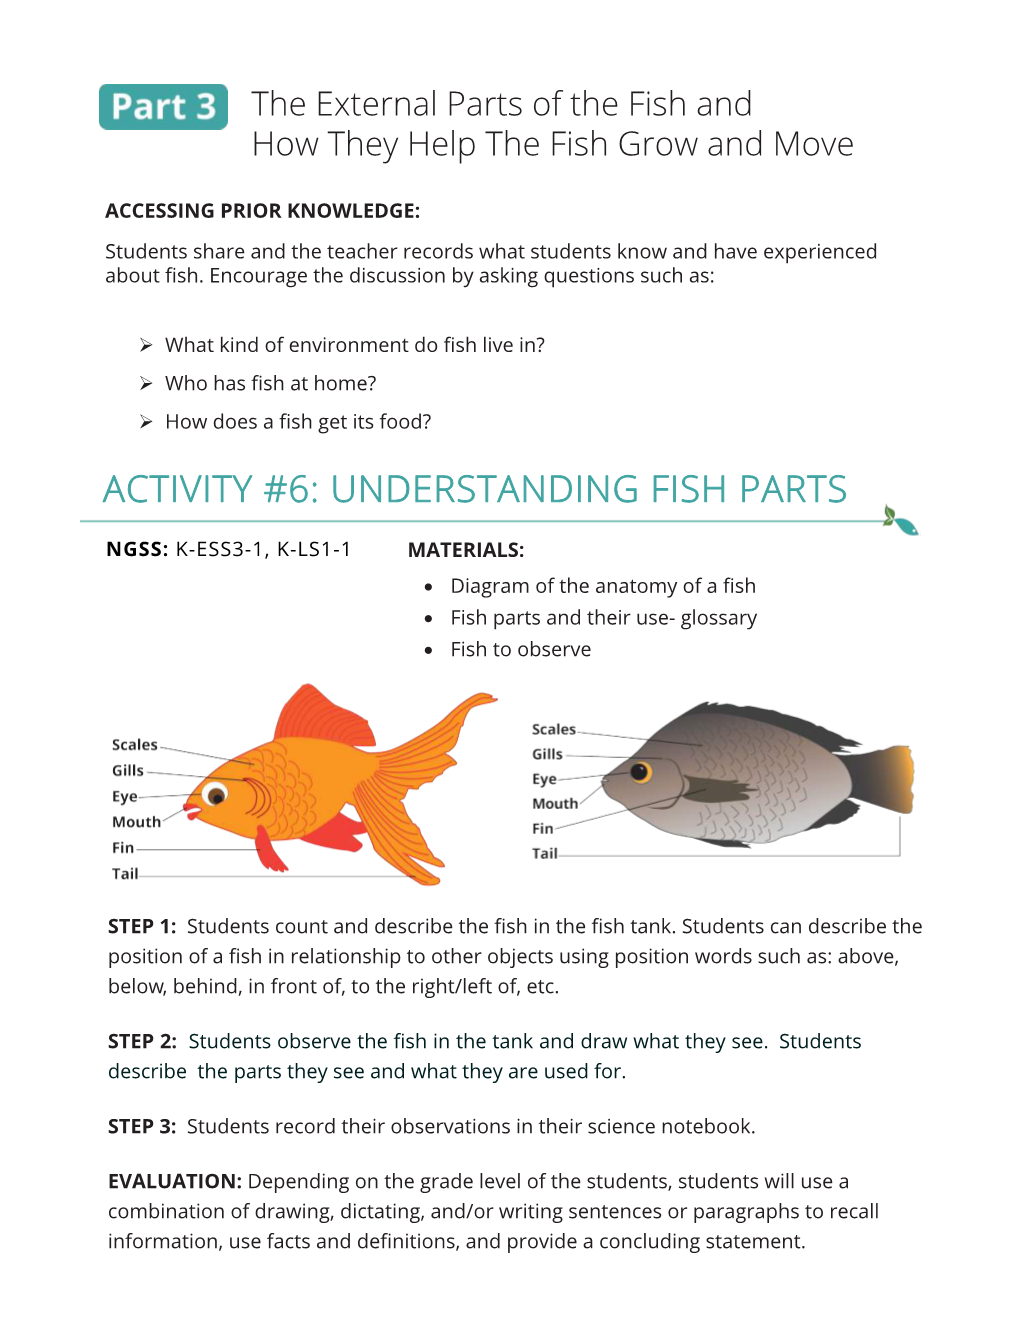 Understanding Fish Parts